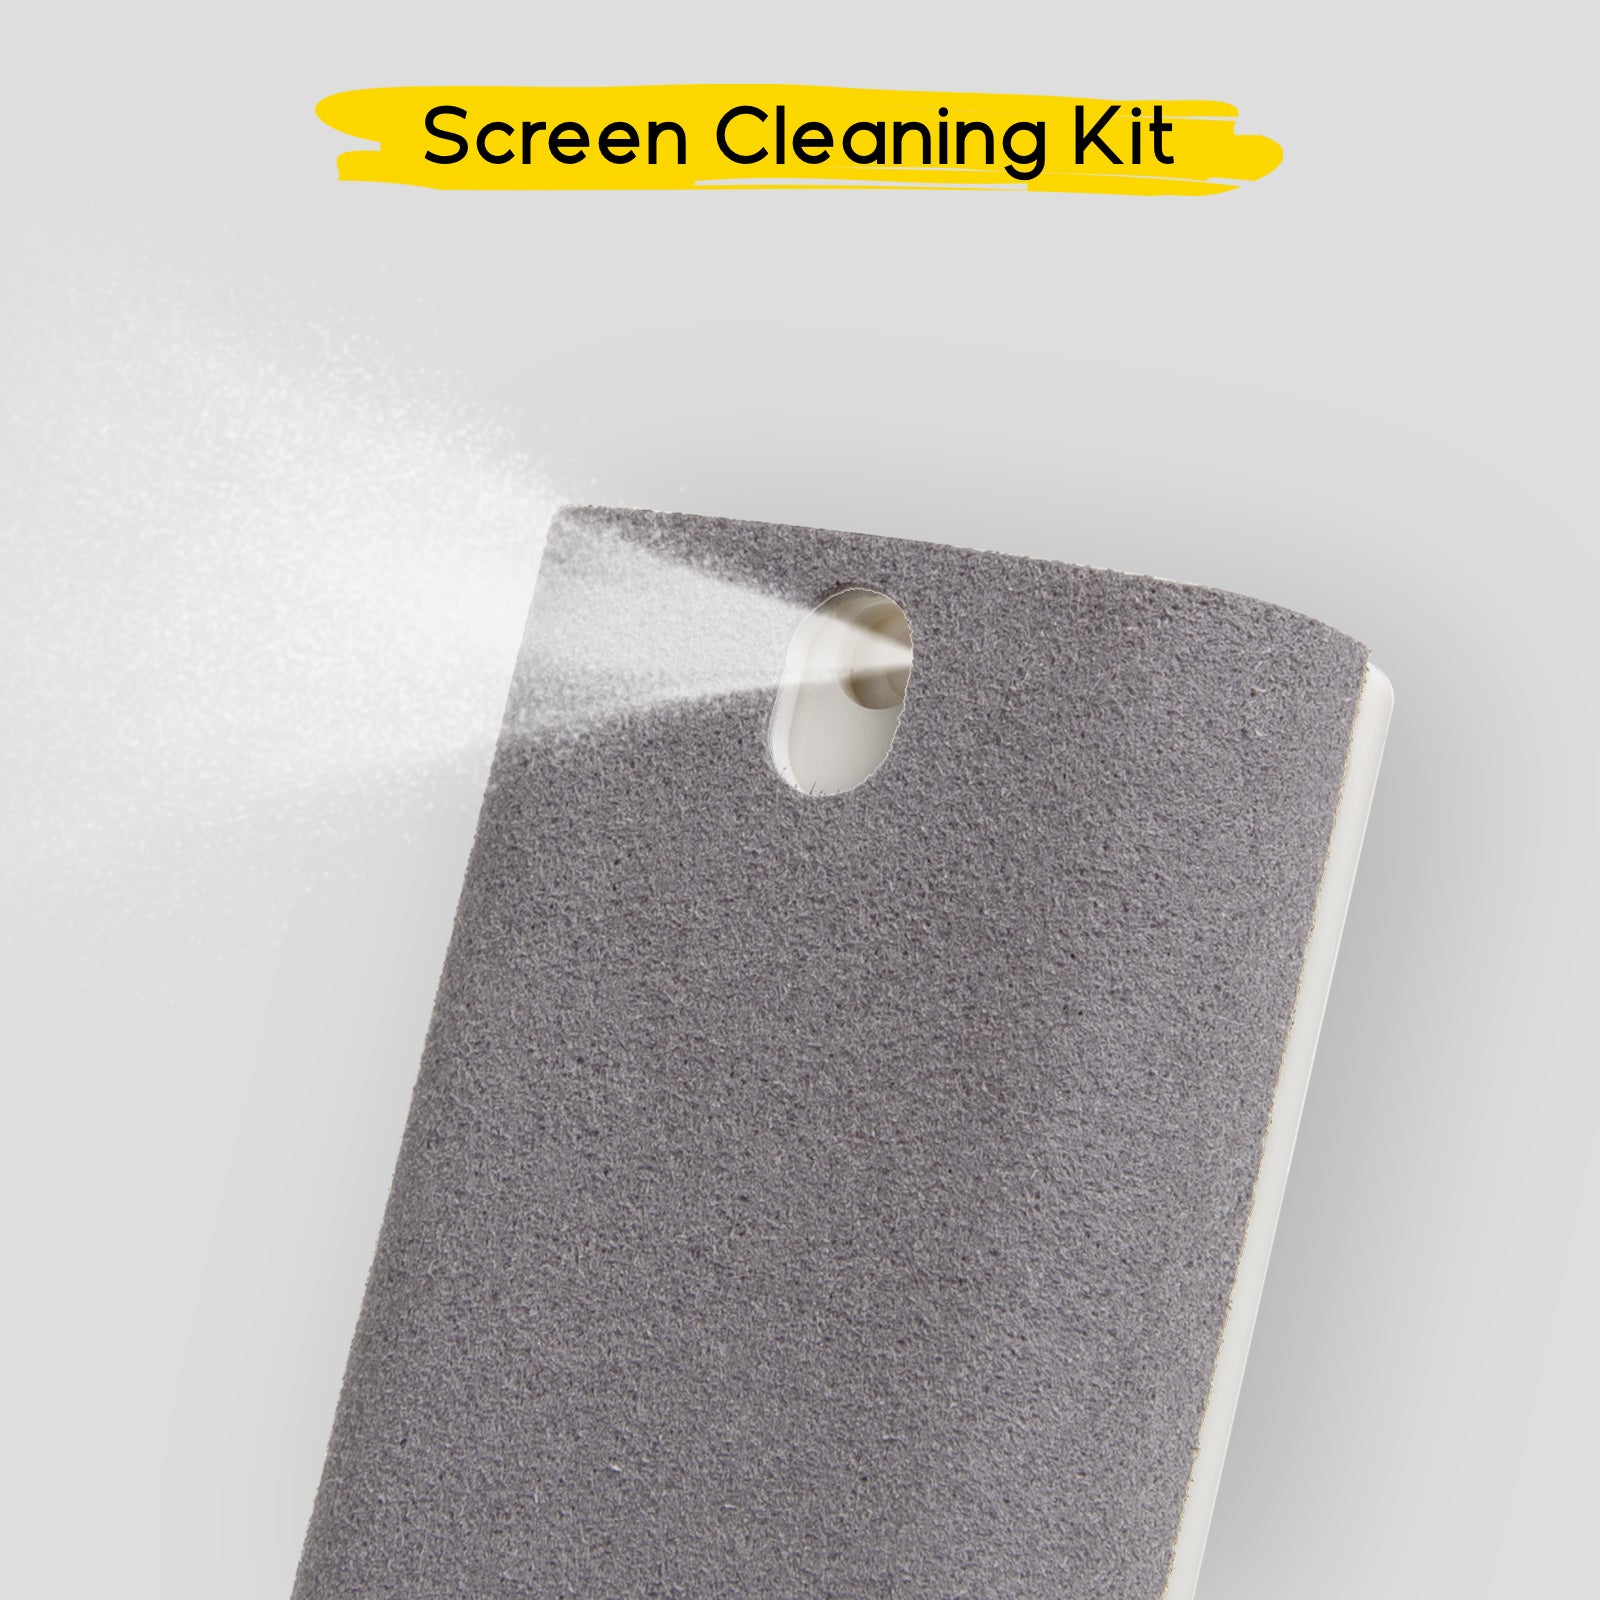 Kit de nettoyage pour écrans de smartphone, tablette et PC